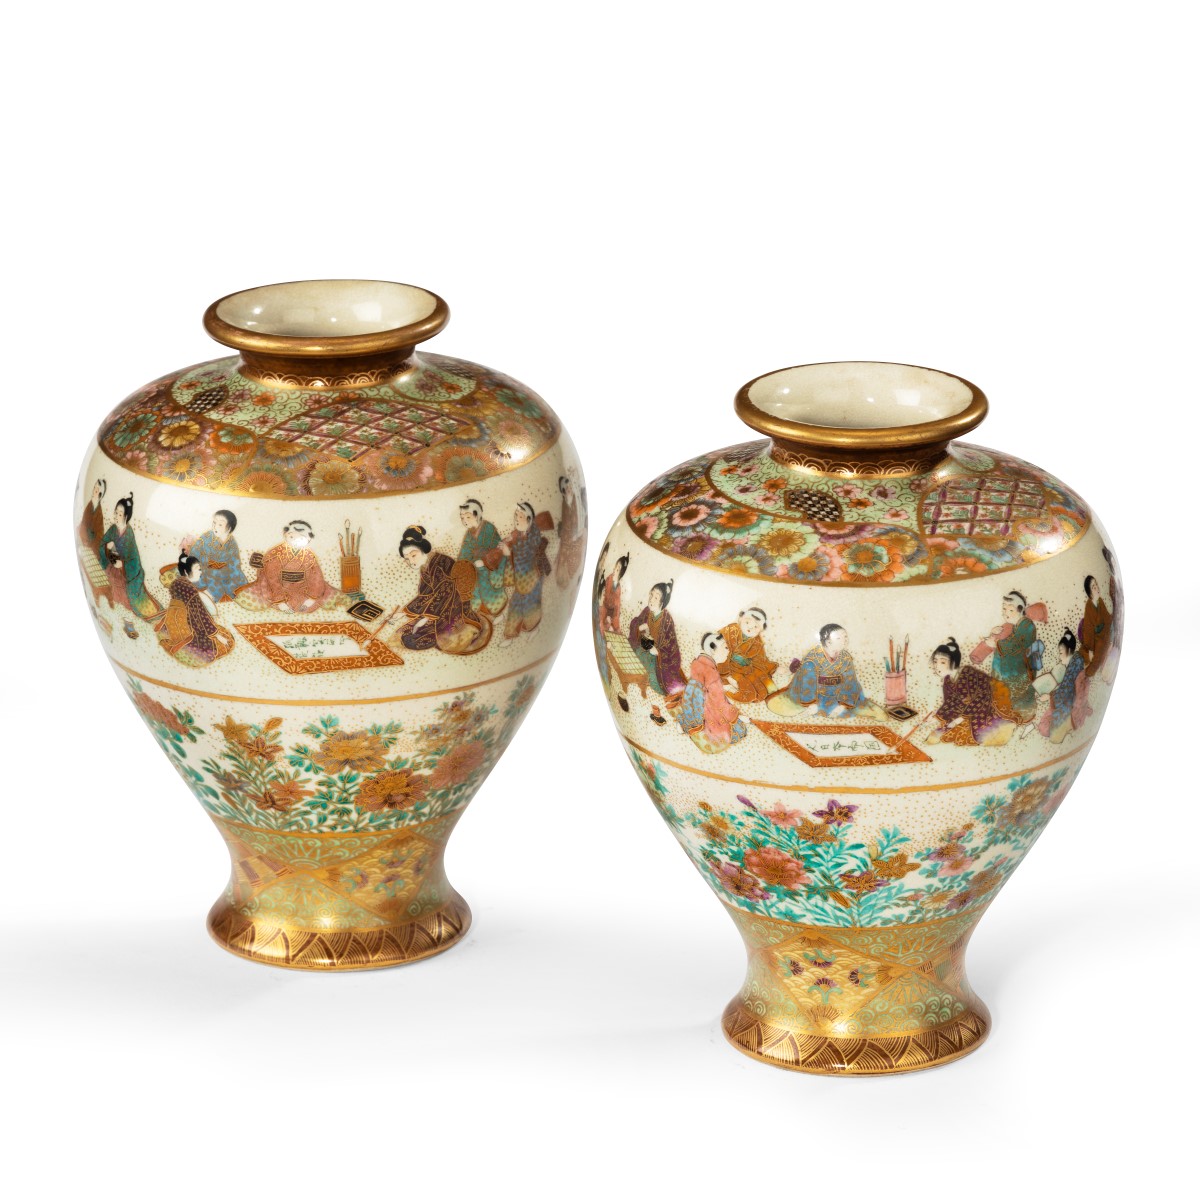 Satsuma earthenware vases